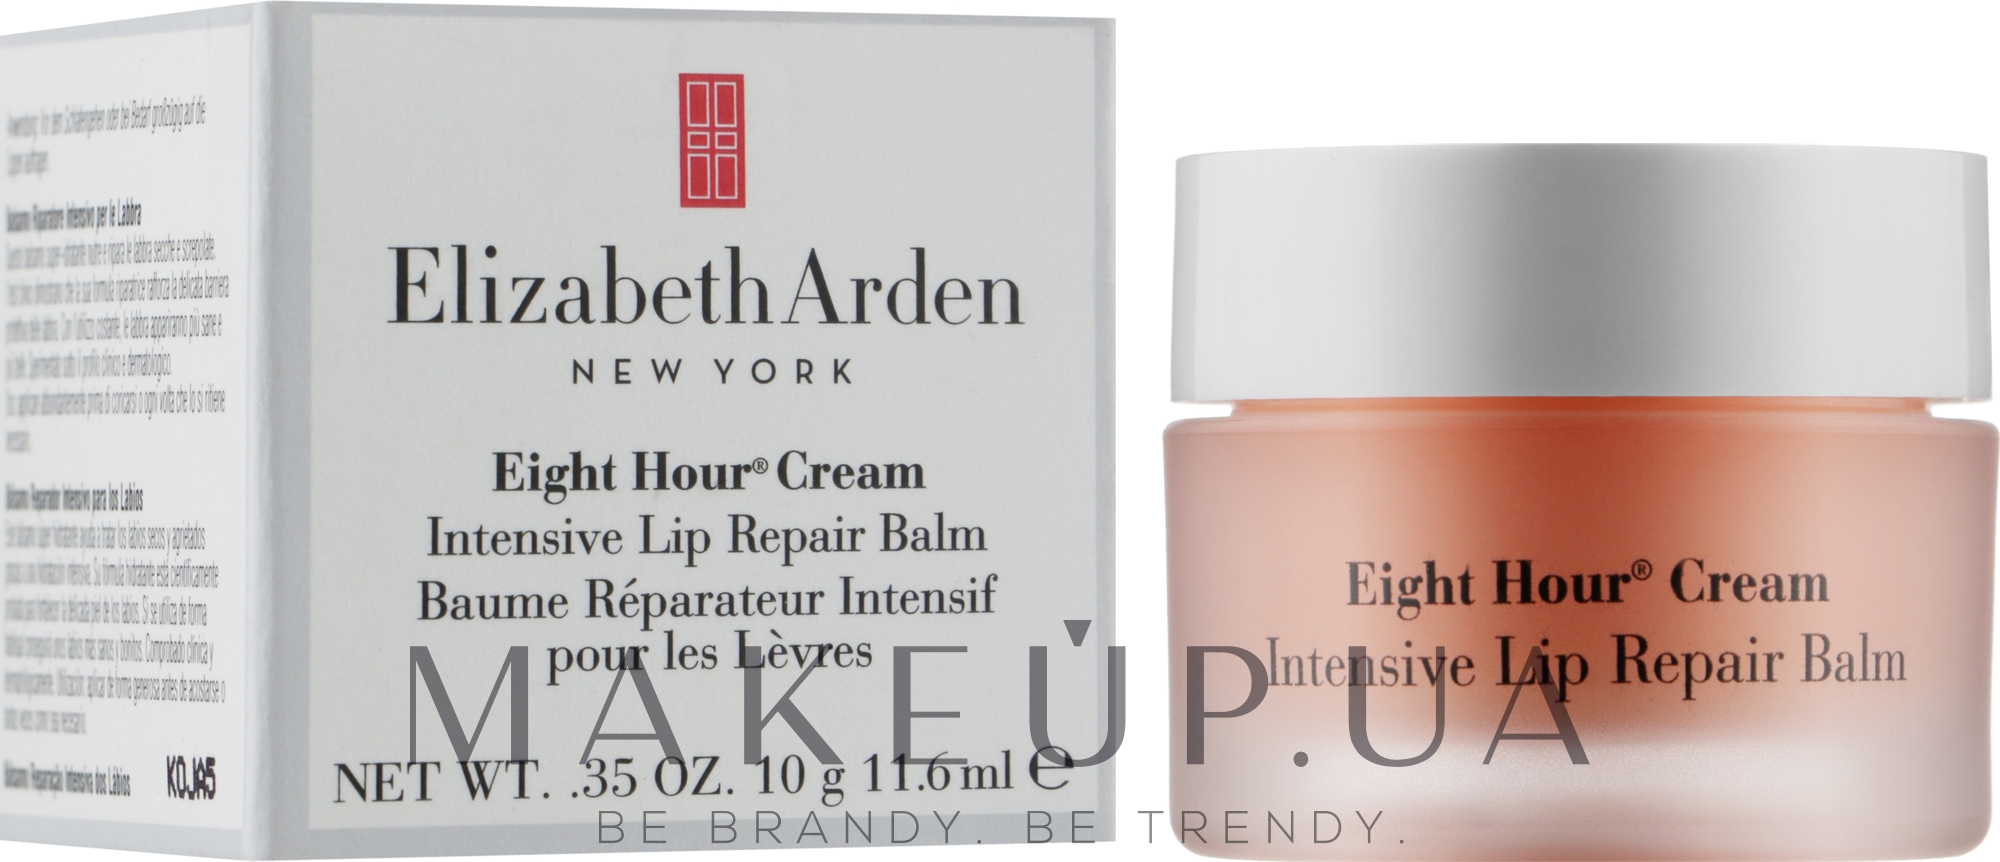 Интенсивный восстанавливающий бальзам для губ - Elizabeth Arden Eight Hour Cream Intensive Lip Repair Balm — фото 11.6g